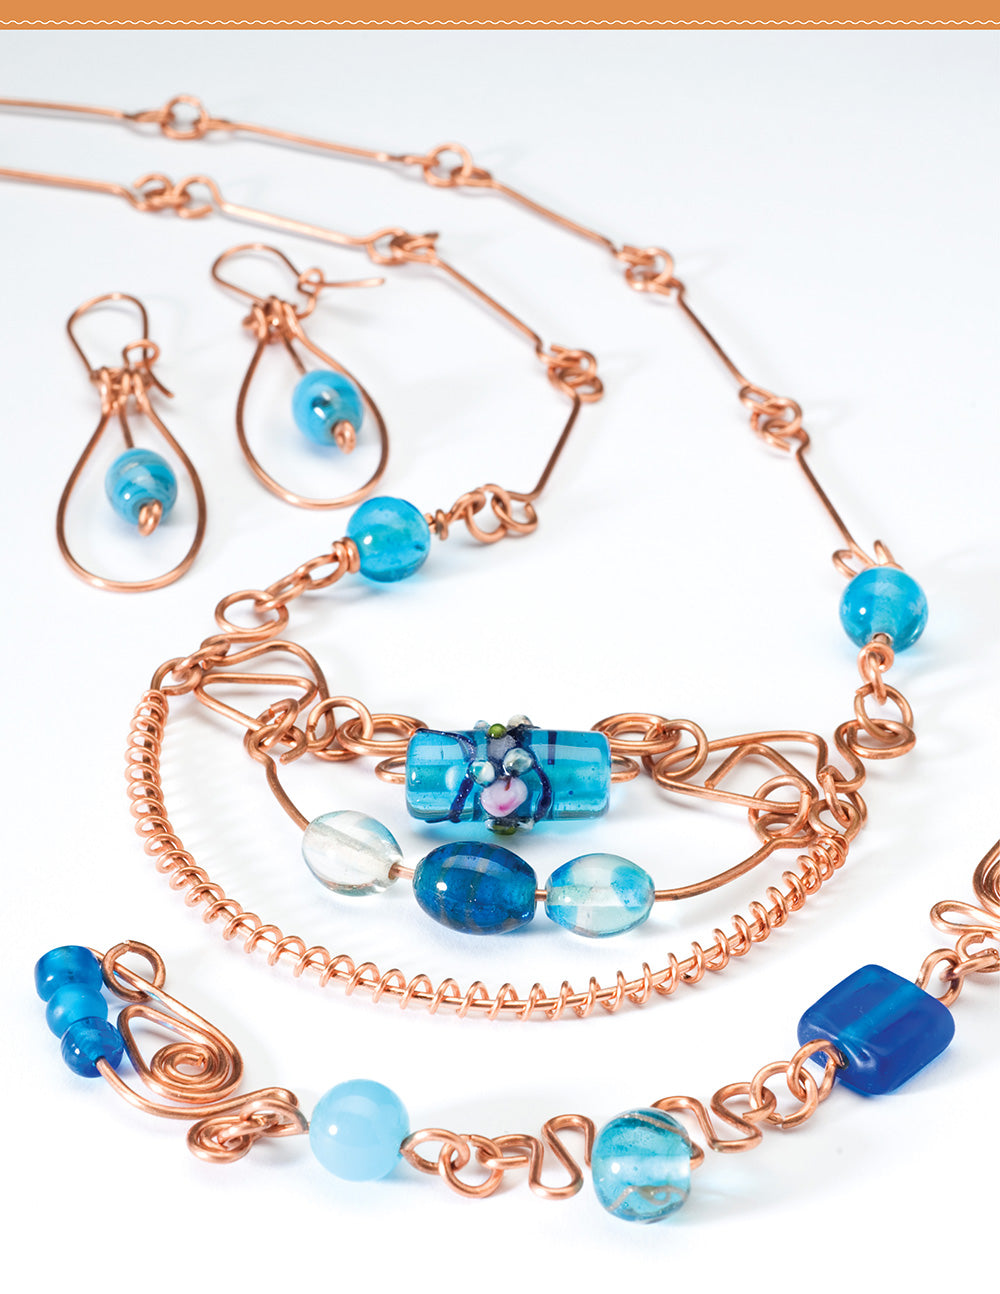 Easy & Elegant Beaded Copper Jewelry